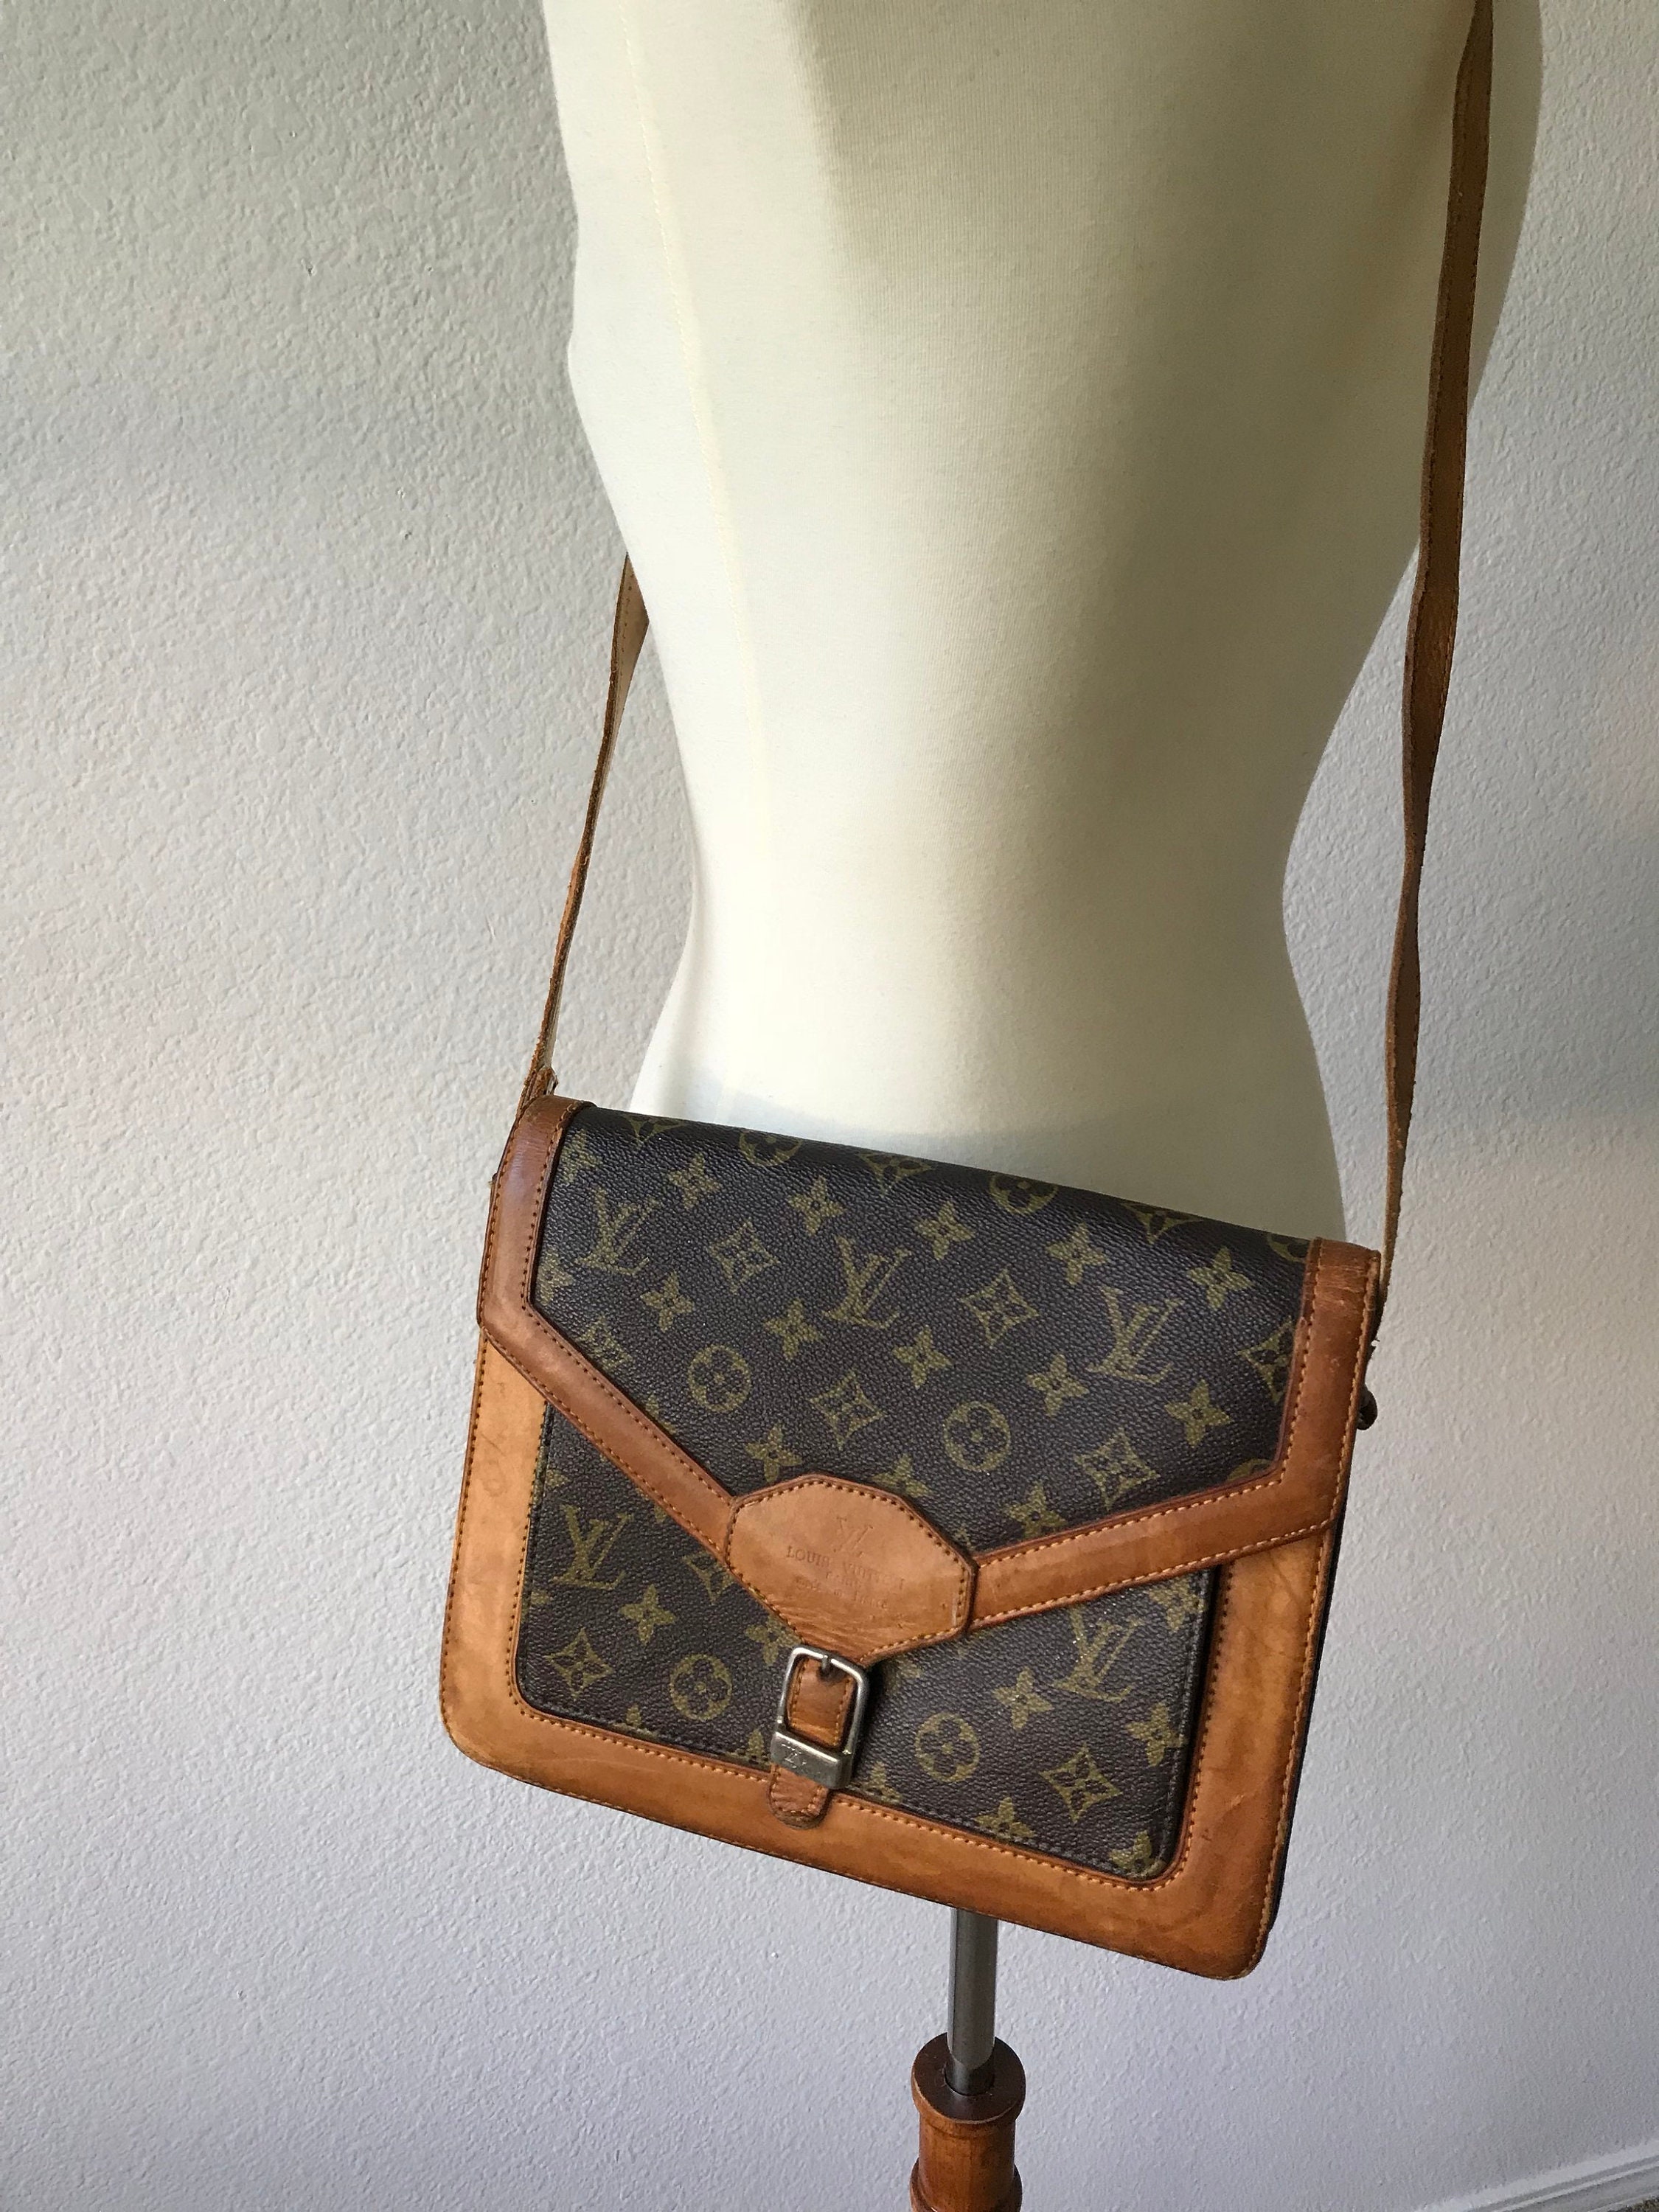 Louis Vuitton Envelope Shoulder Bags